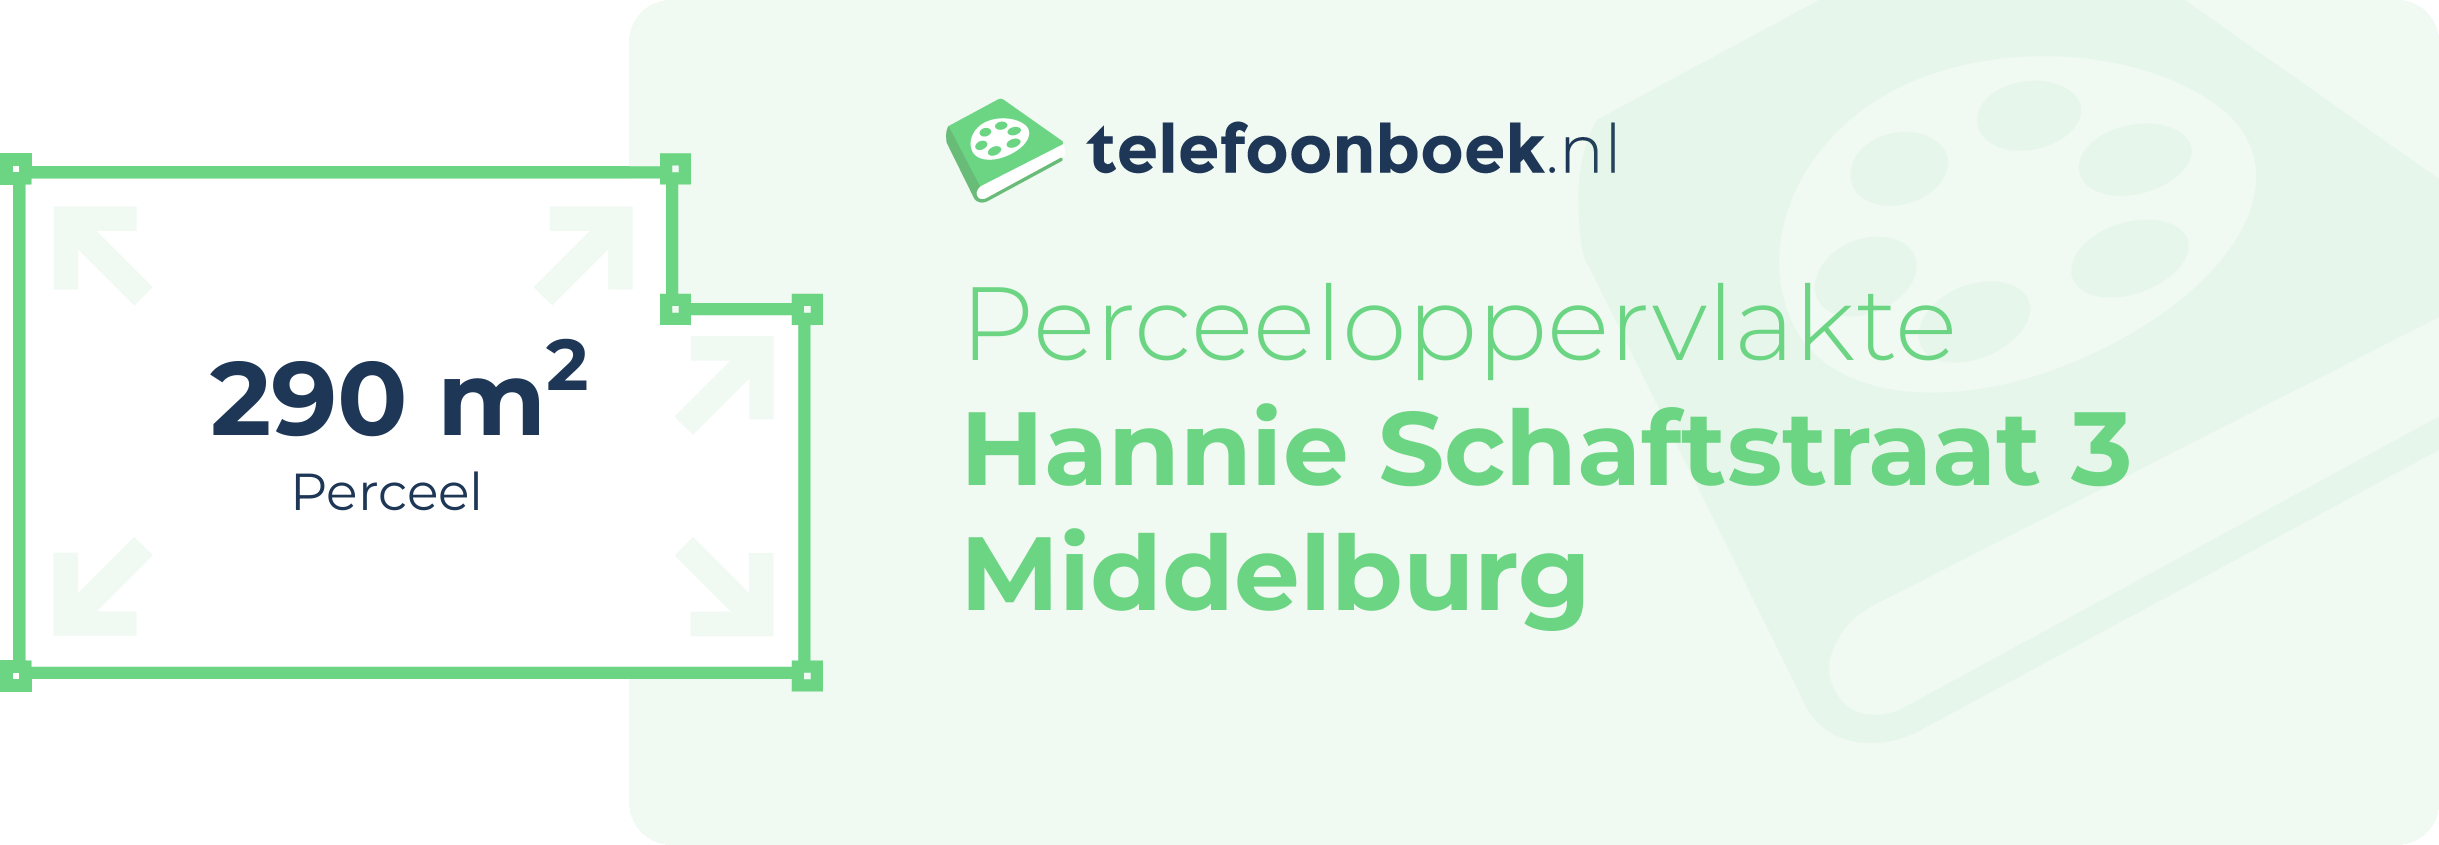 Perceeloppervlakte Hannie Schaftstraat 3 Middelburg